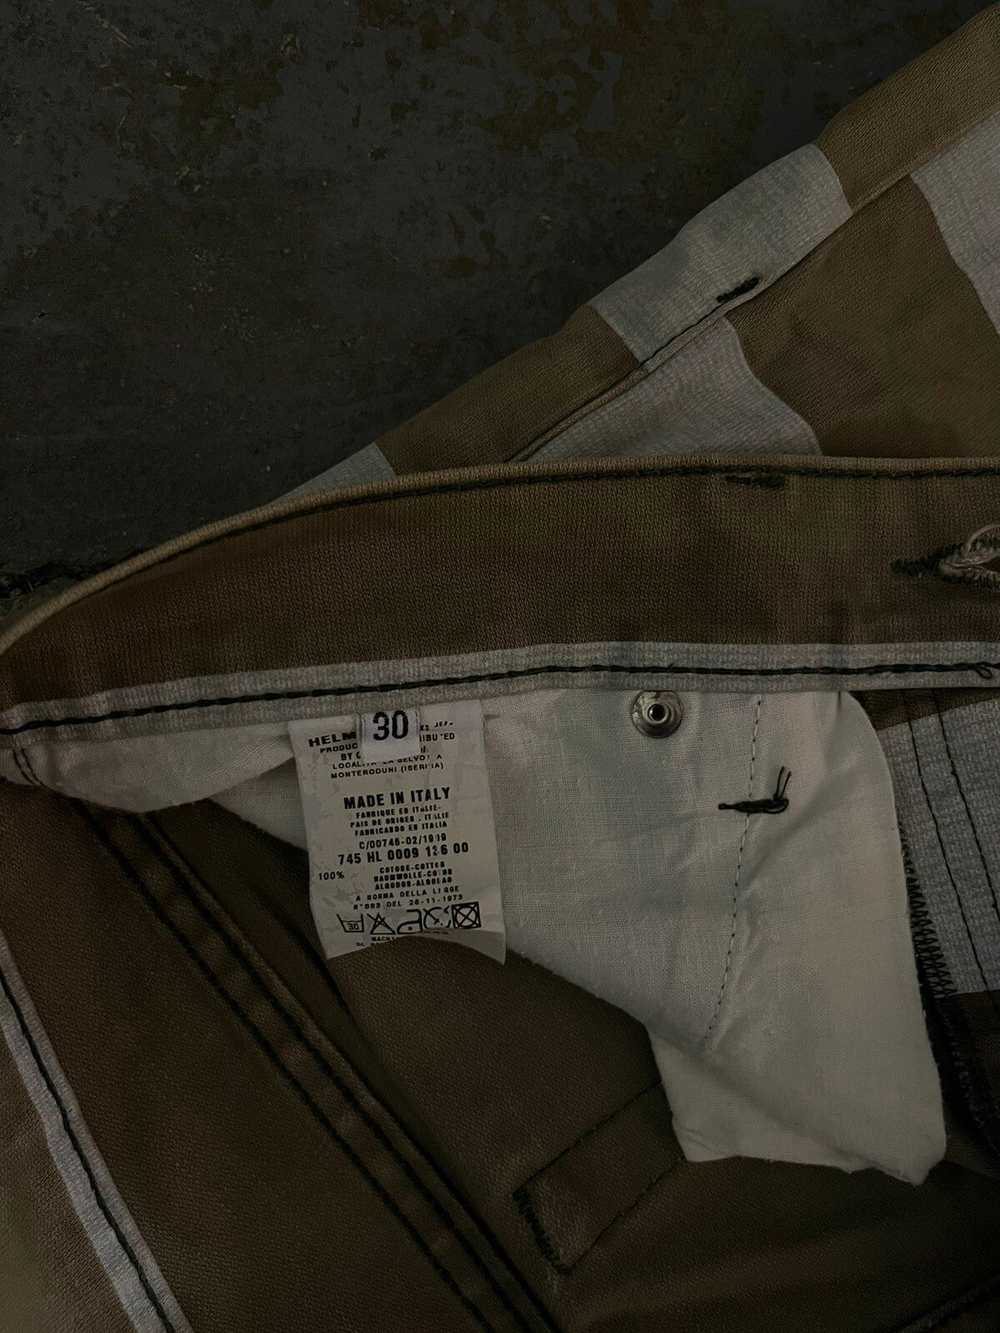 Helmut Lang SS99 Prisoner Jeans - image 3